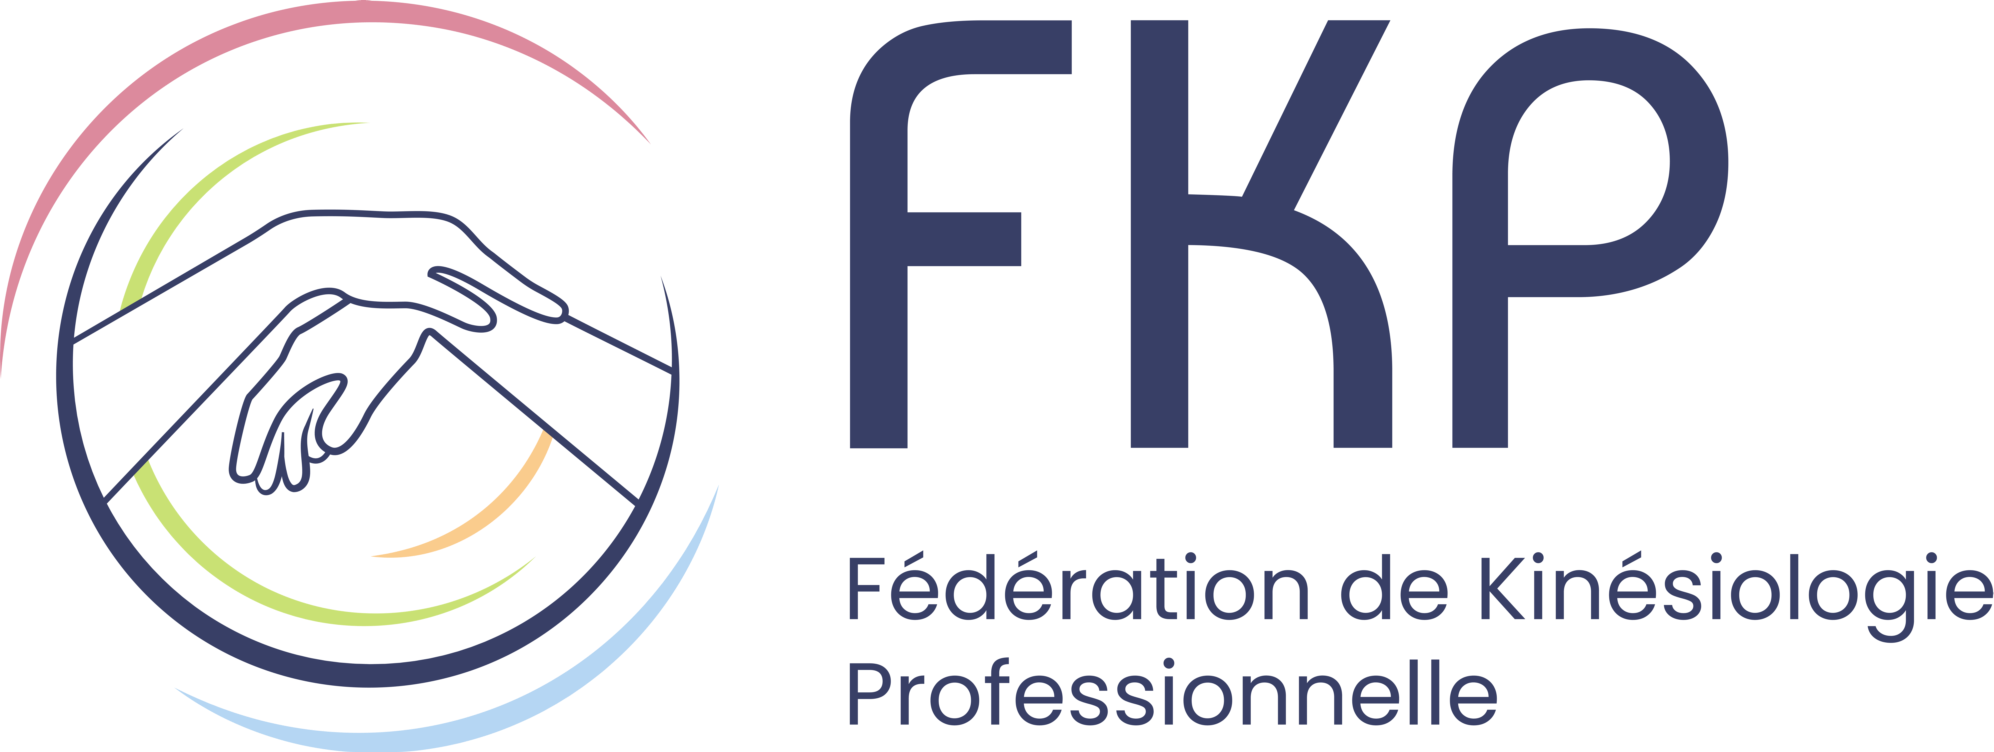 logo de la fédération de kinésiologie professionnelle